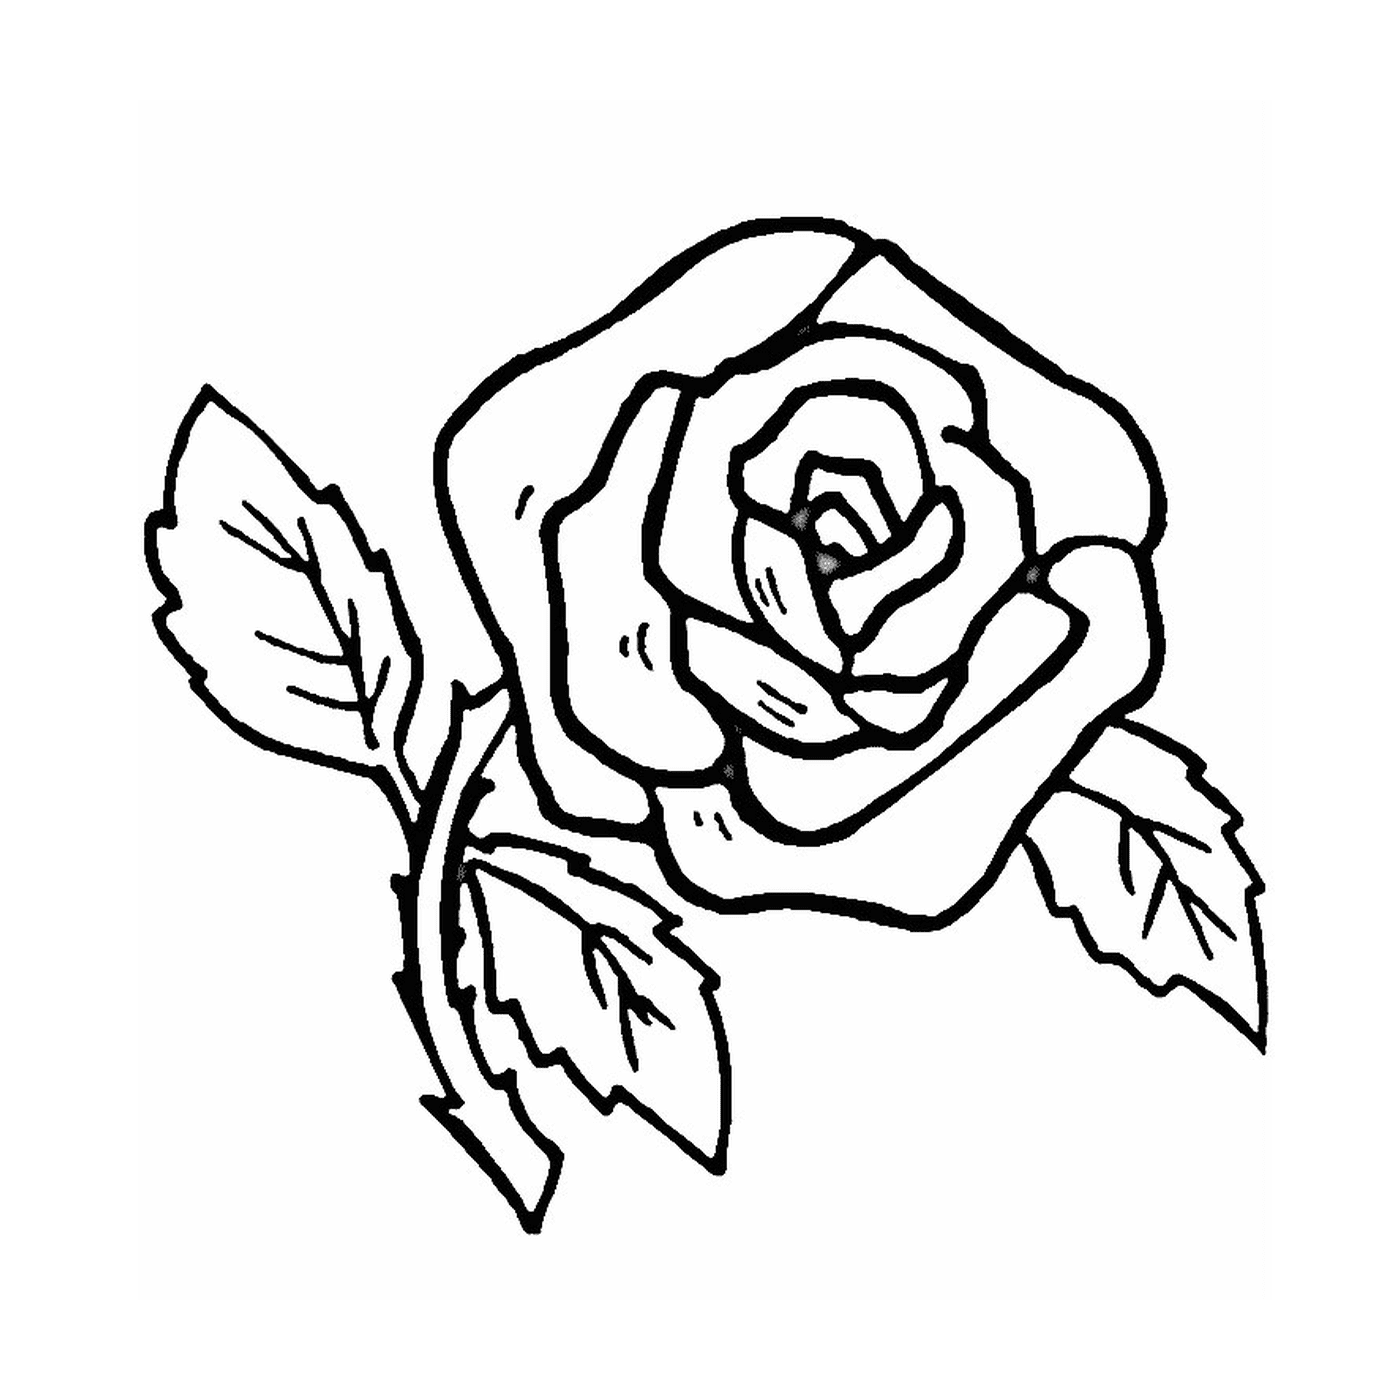  Una rosa semplice e facile 